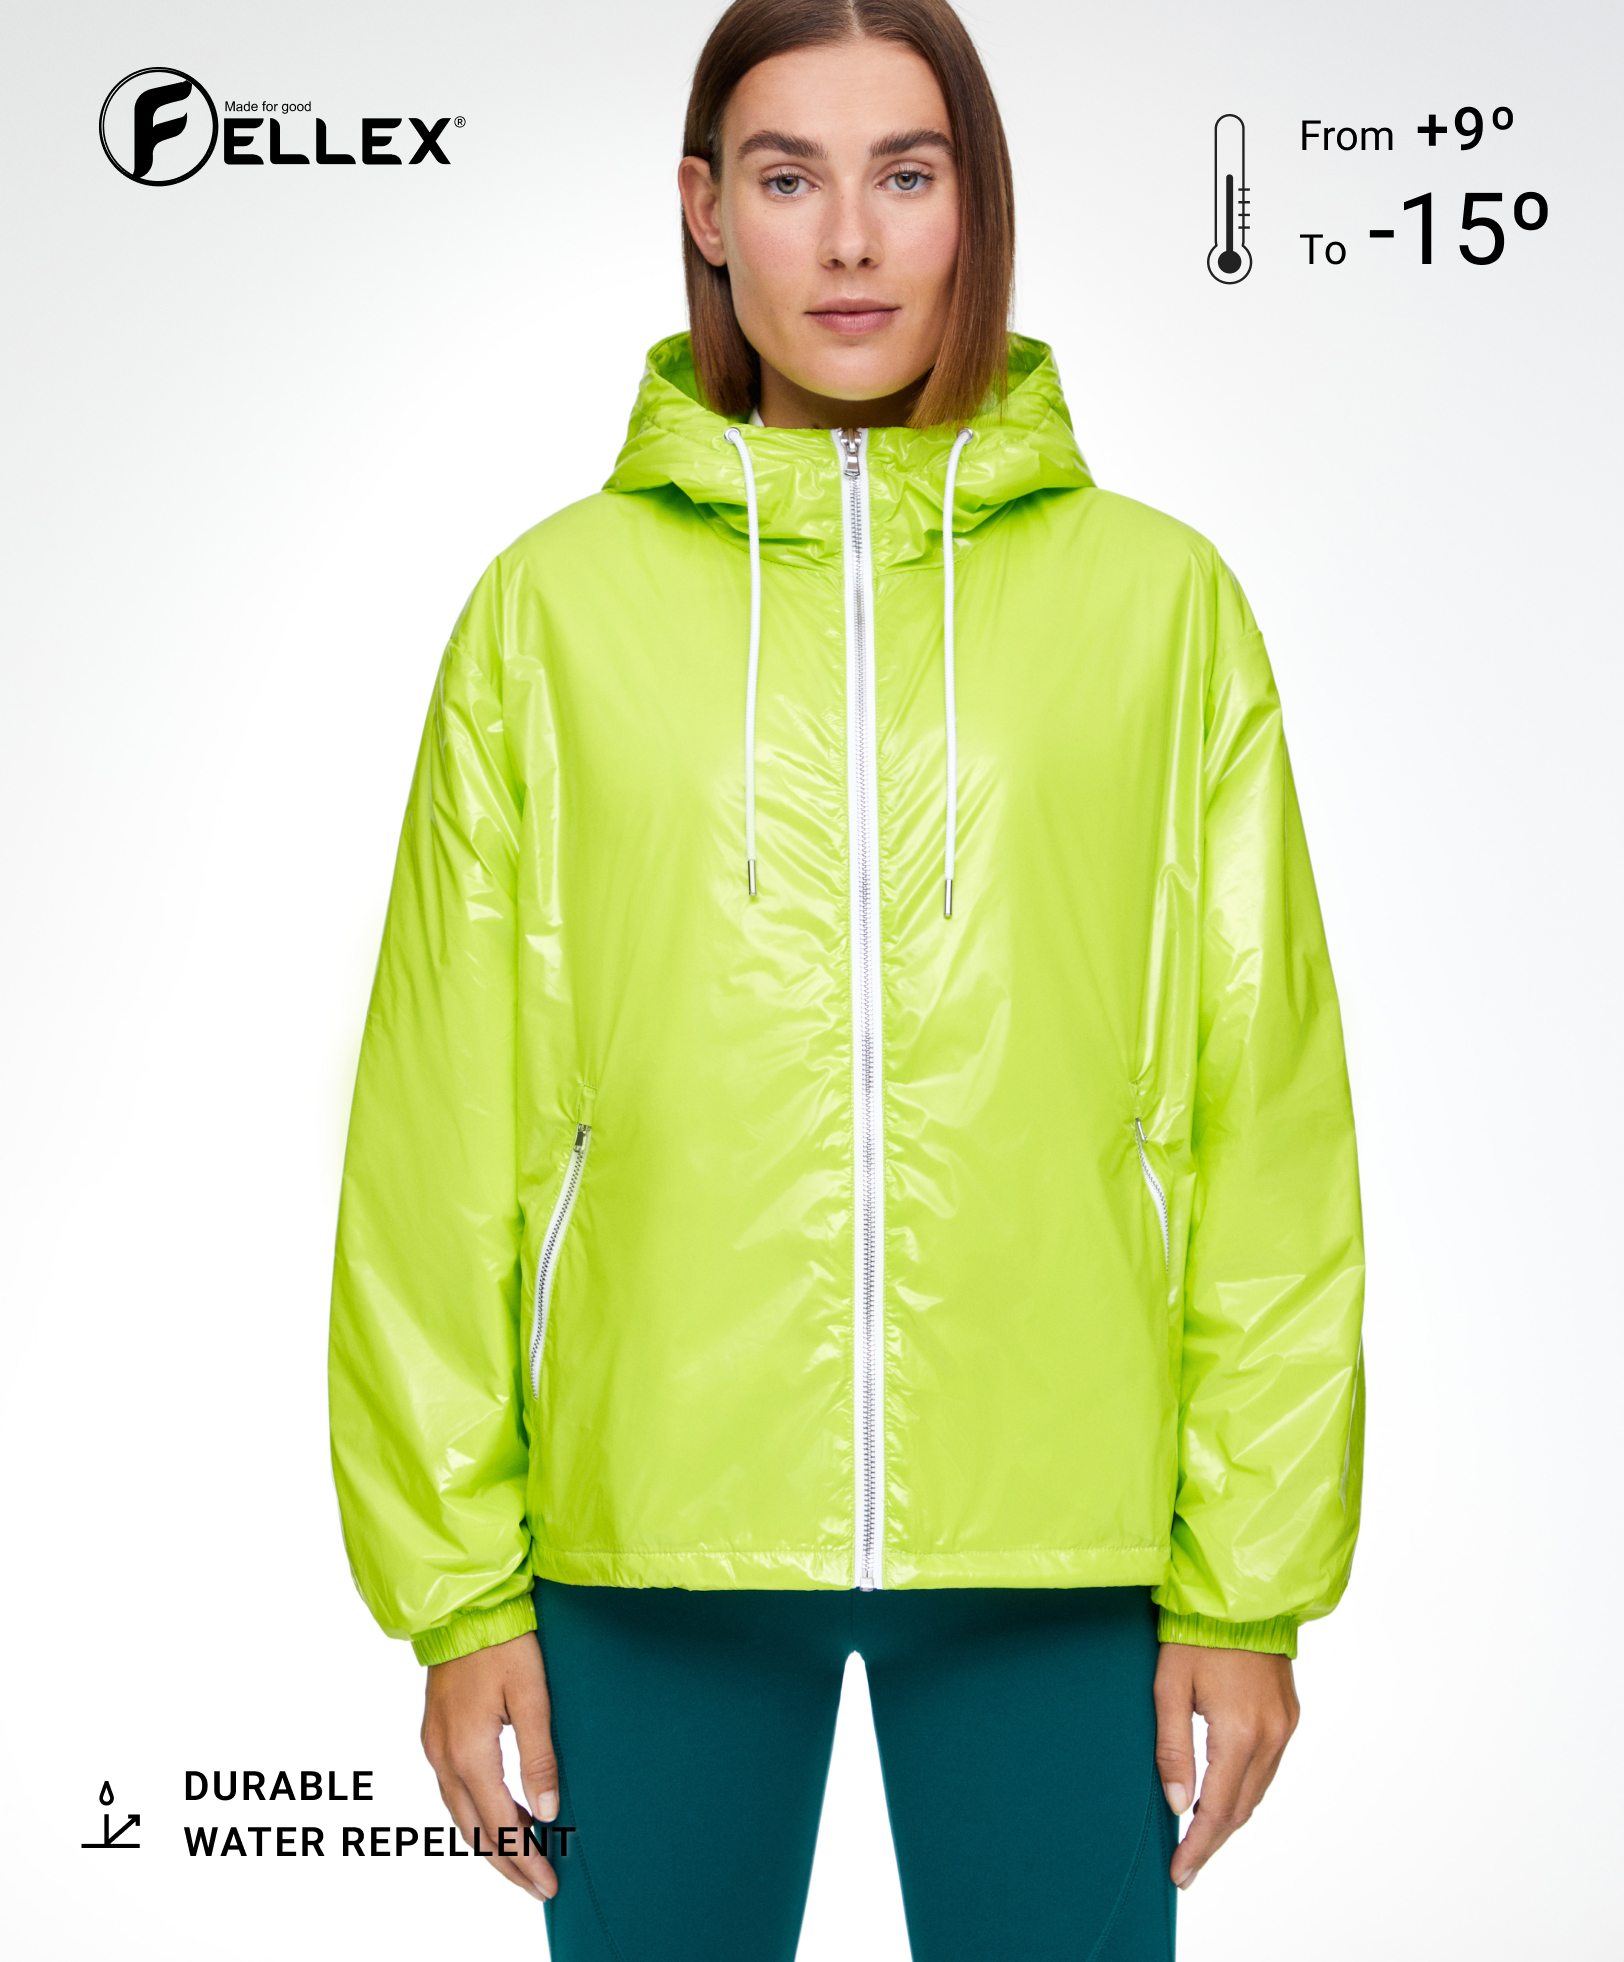 FELLEX® AEROGEL padded jacket